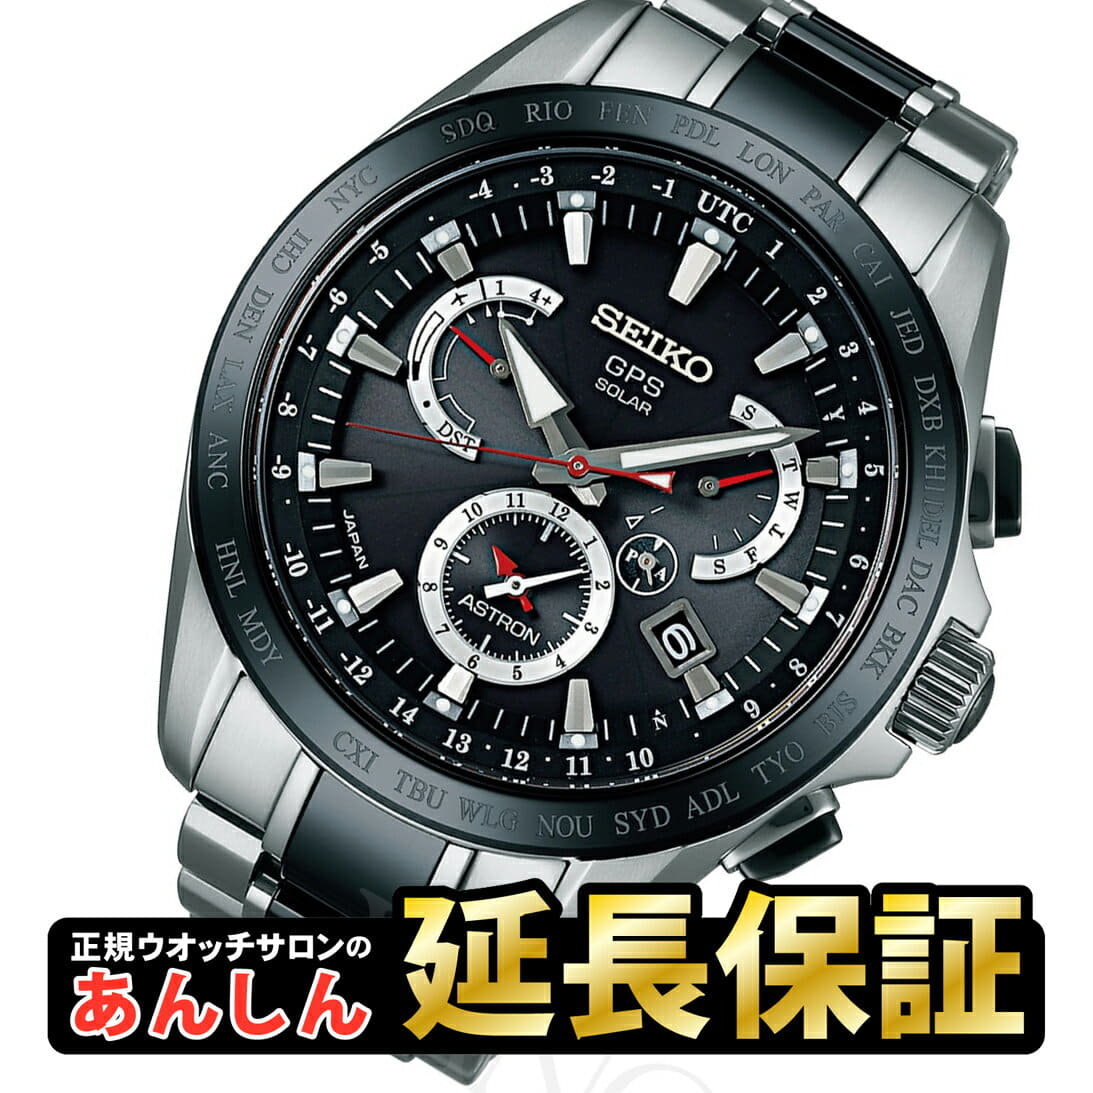 New][SEIKO ASTRON] SEIKO ass Tron SBXB041 Shohei Otani advertisement model  GPS solar watch satellite radio time signal _10spl - BE FORWARD Store